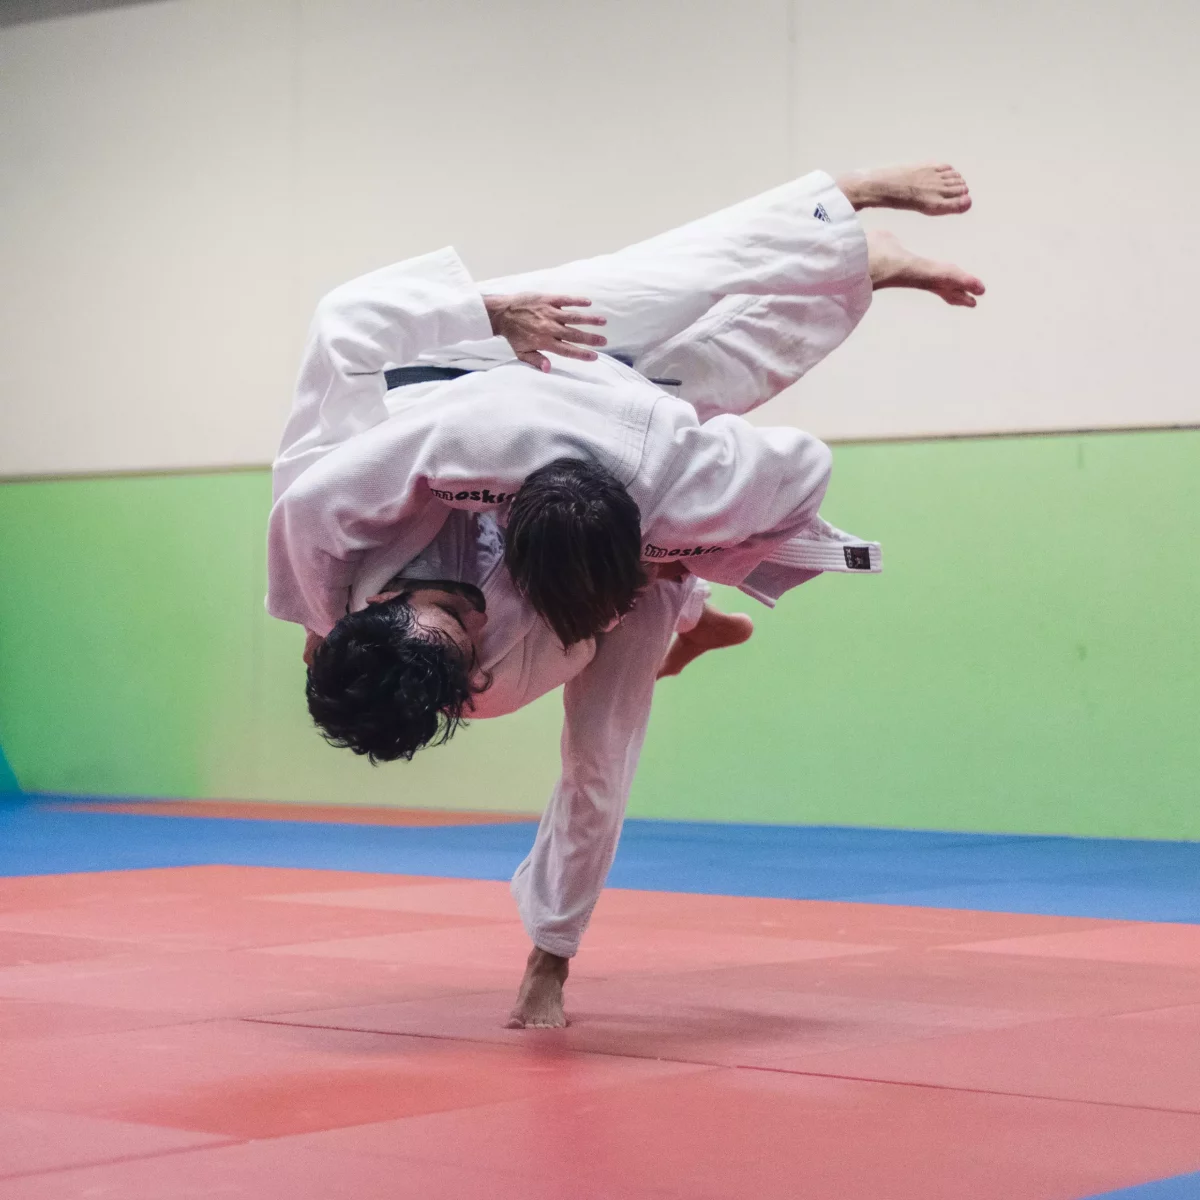 Matteo Cerutti a KISKA product management consultant and apparel designer grapple in judo dojo